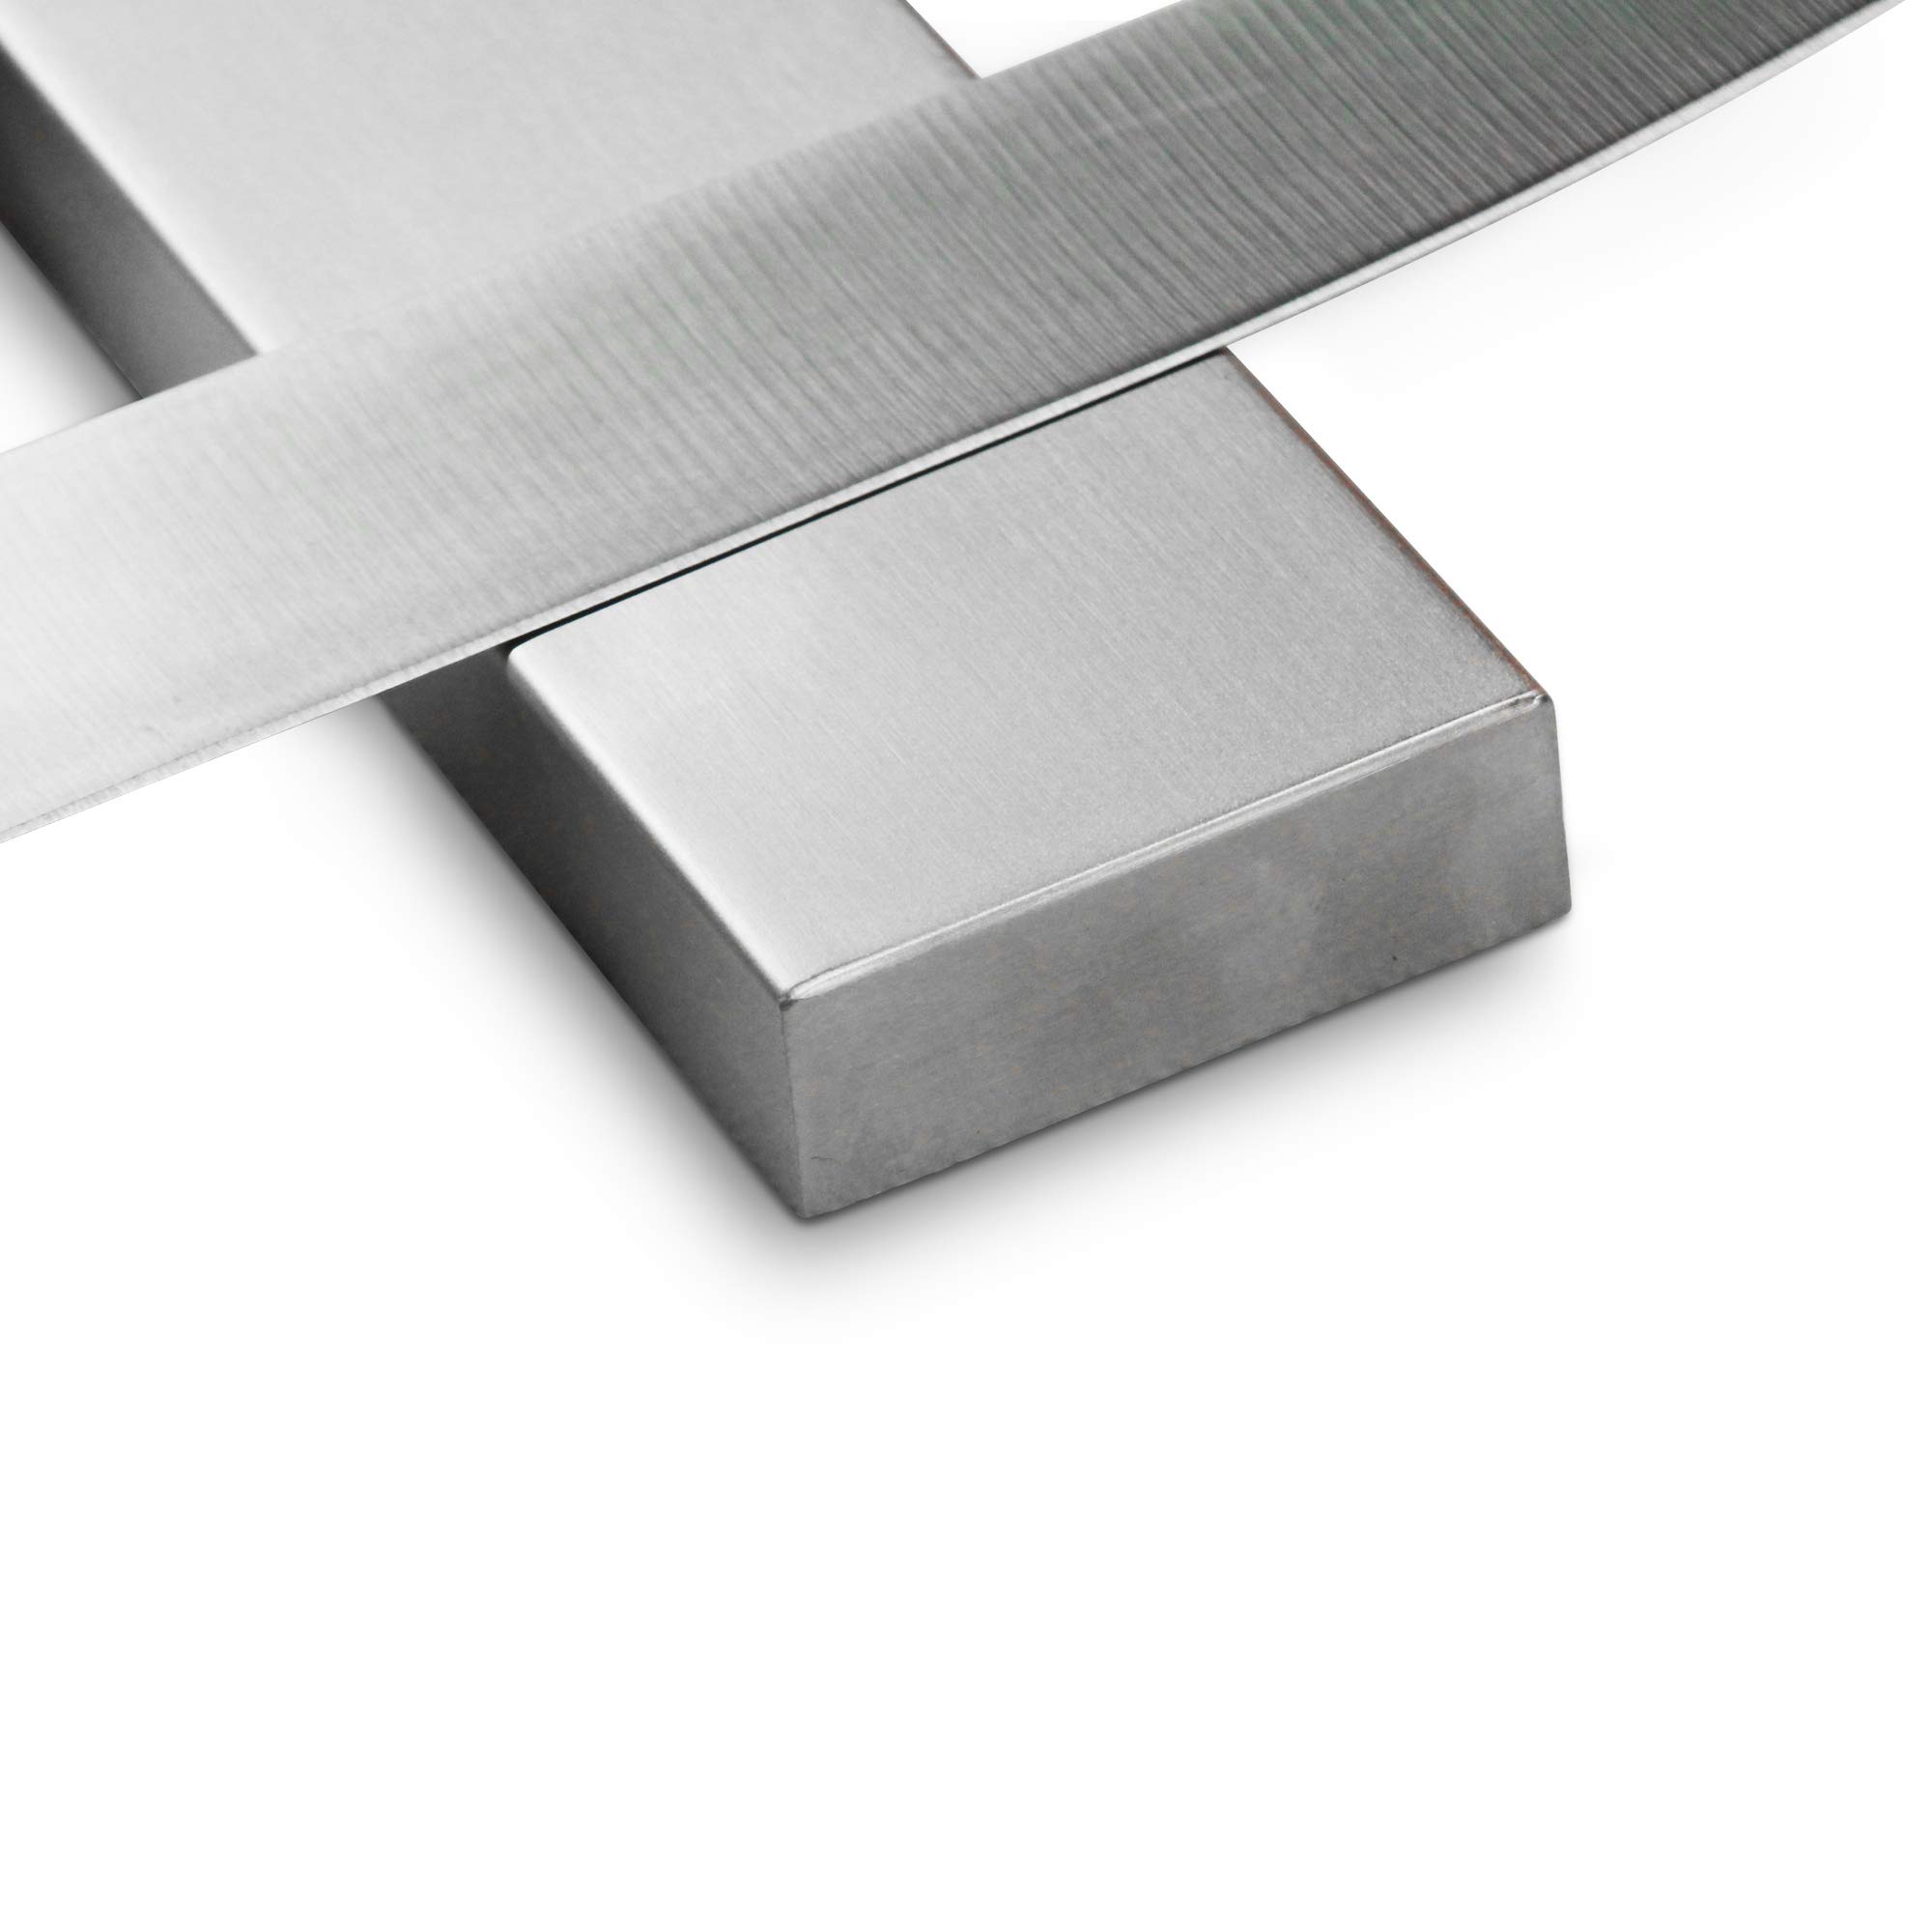 Powerful 18" Stainless Steel Knife Magnet, Magnetic Knife Holder Bar Rack Strip